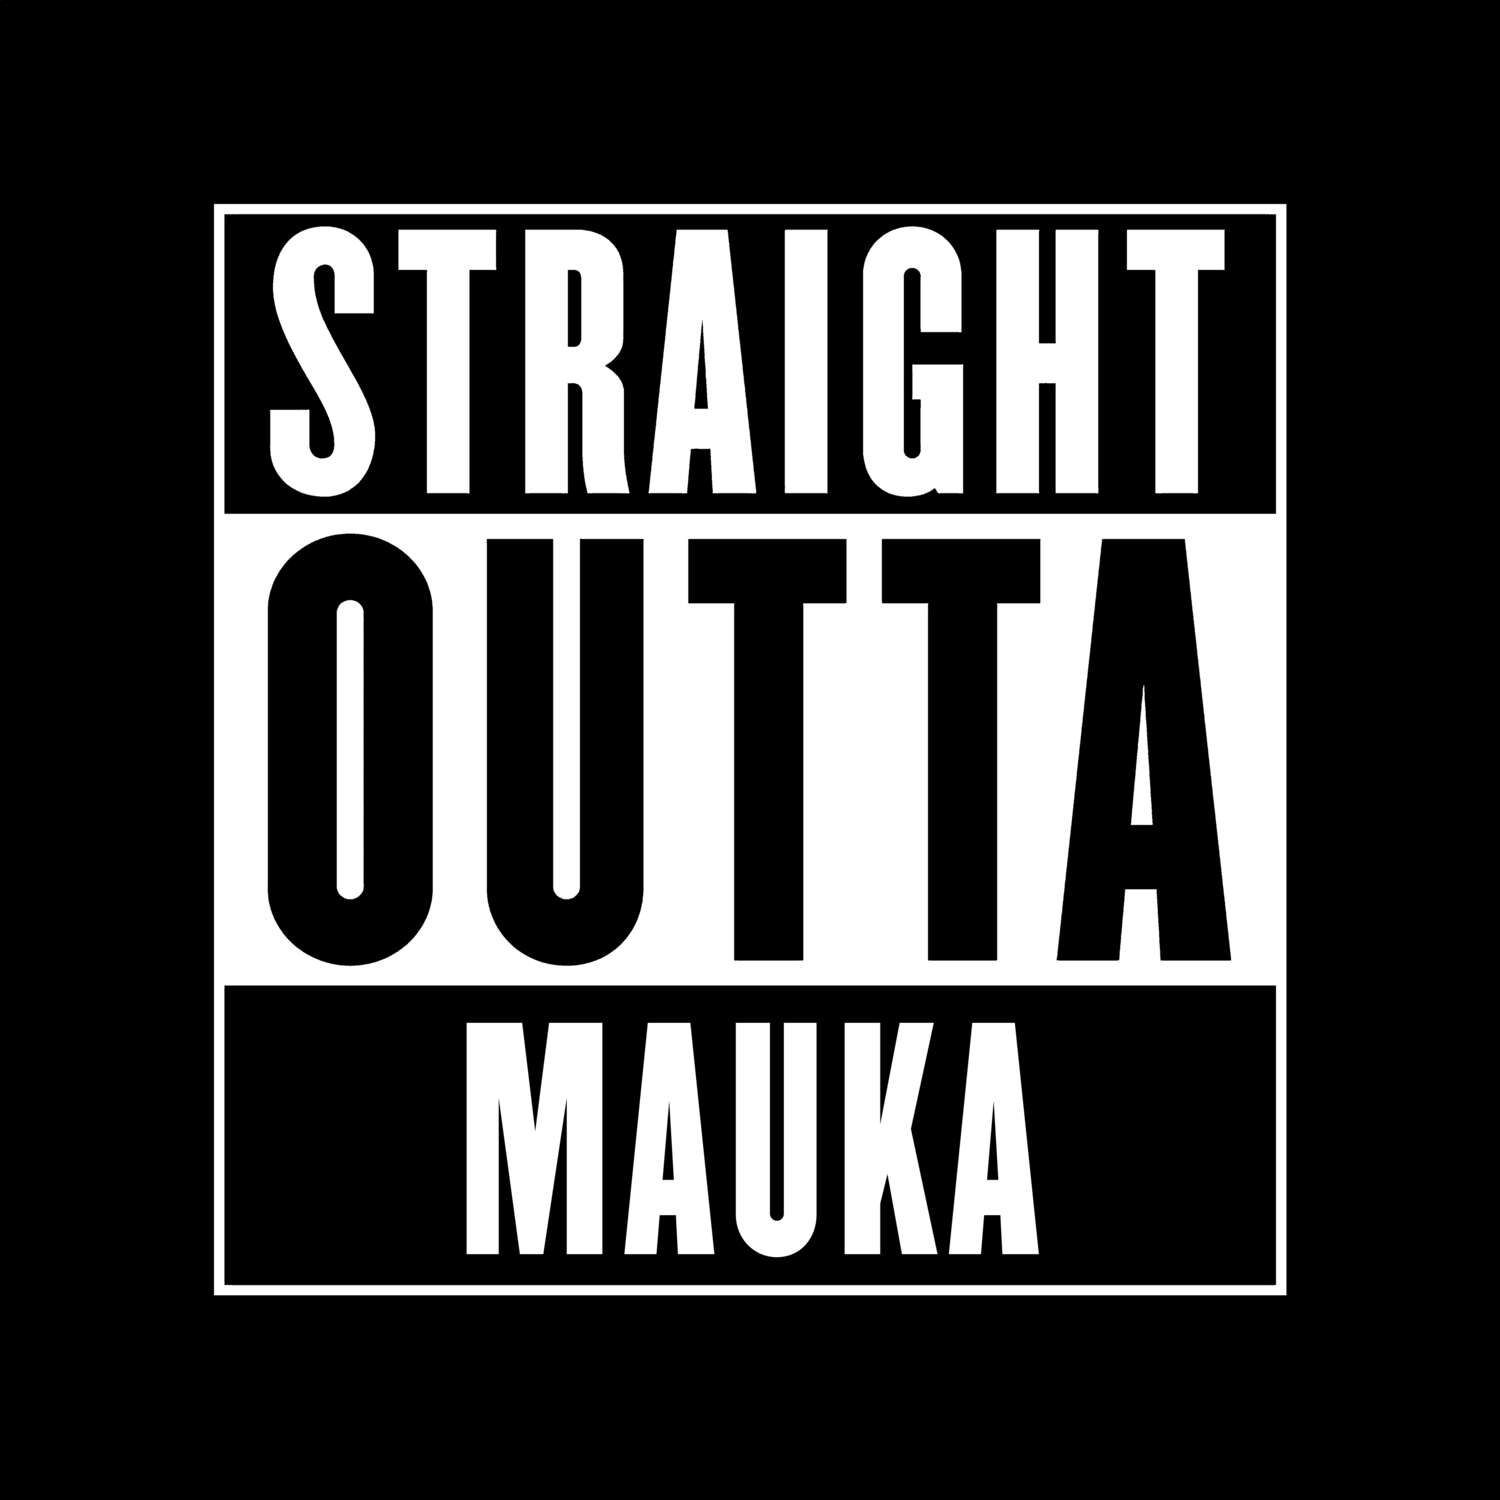 Mauka T-Shirt »Straight Outta«